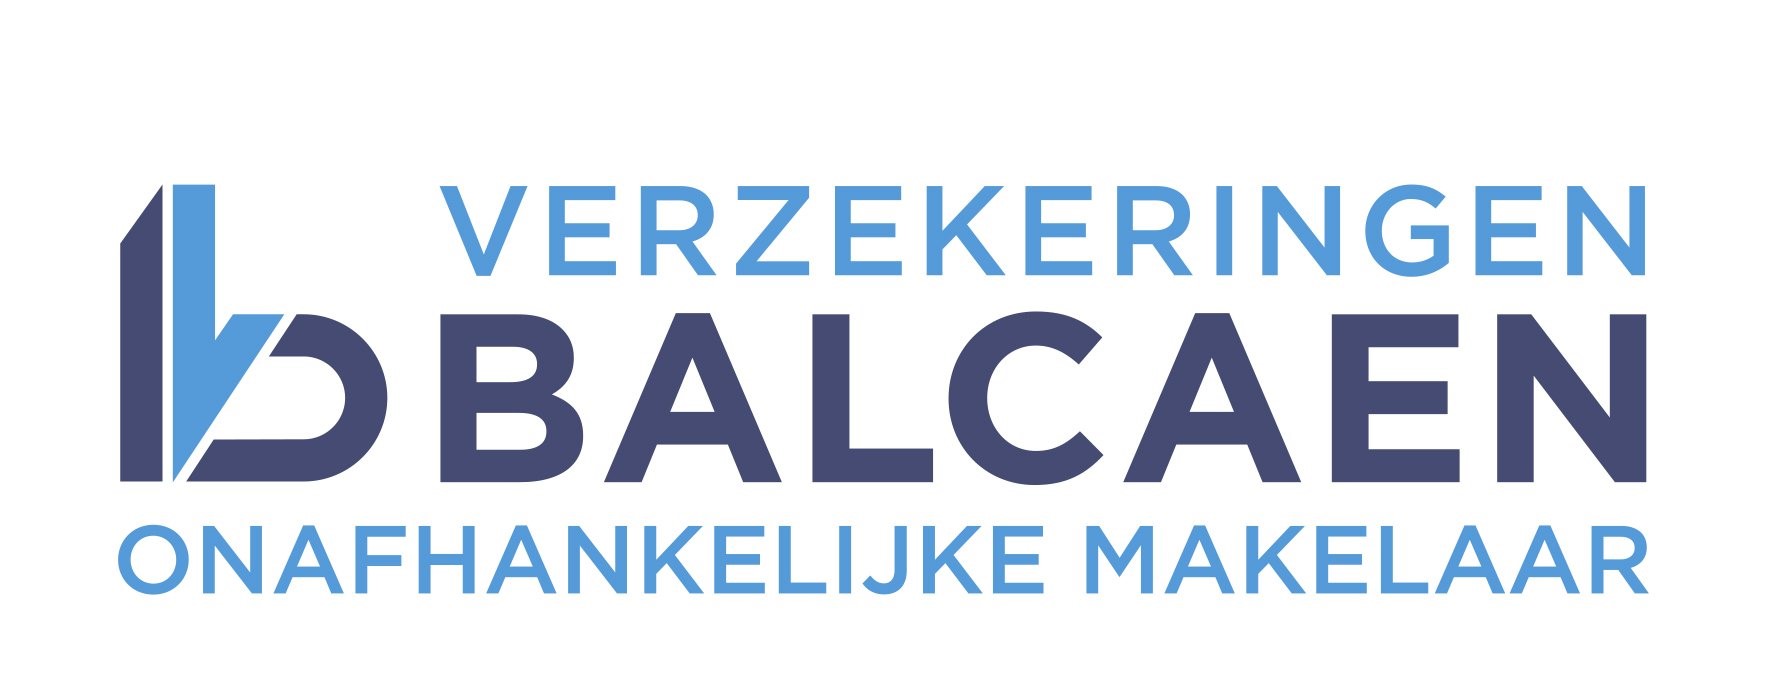 Verzekeringen Balcaen 